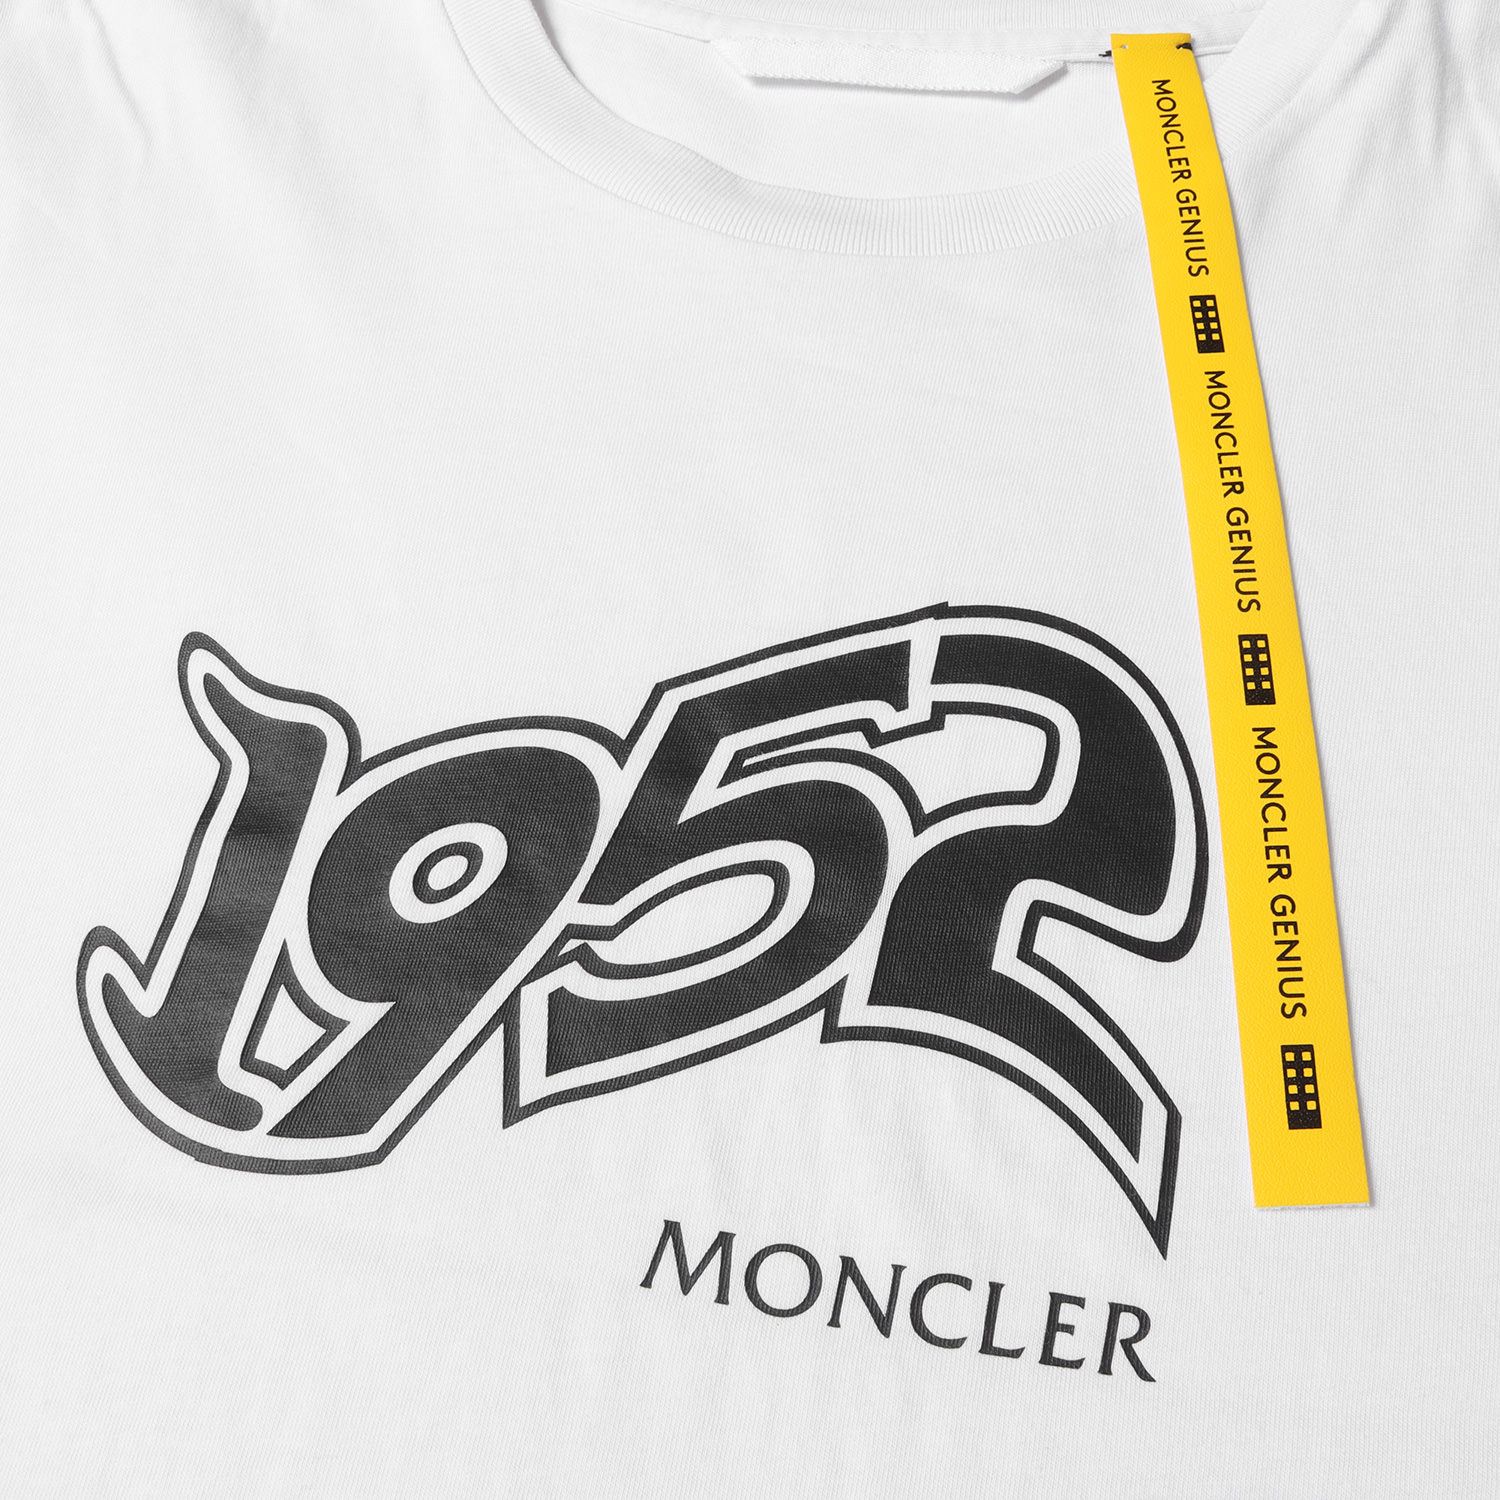 MONCLER モンクレール Tシャツ サイズ:L 1952 ロゴ グラフィック ...